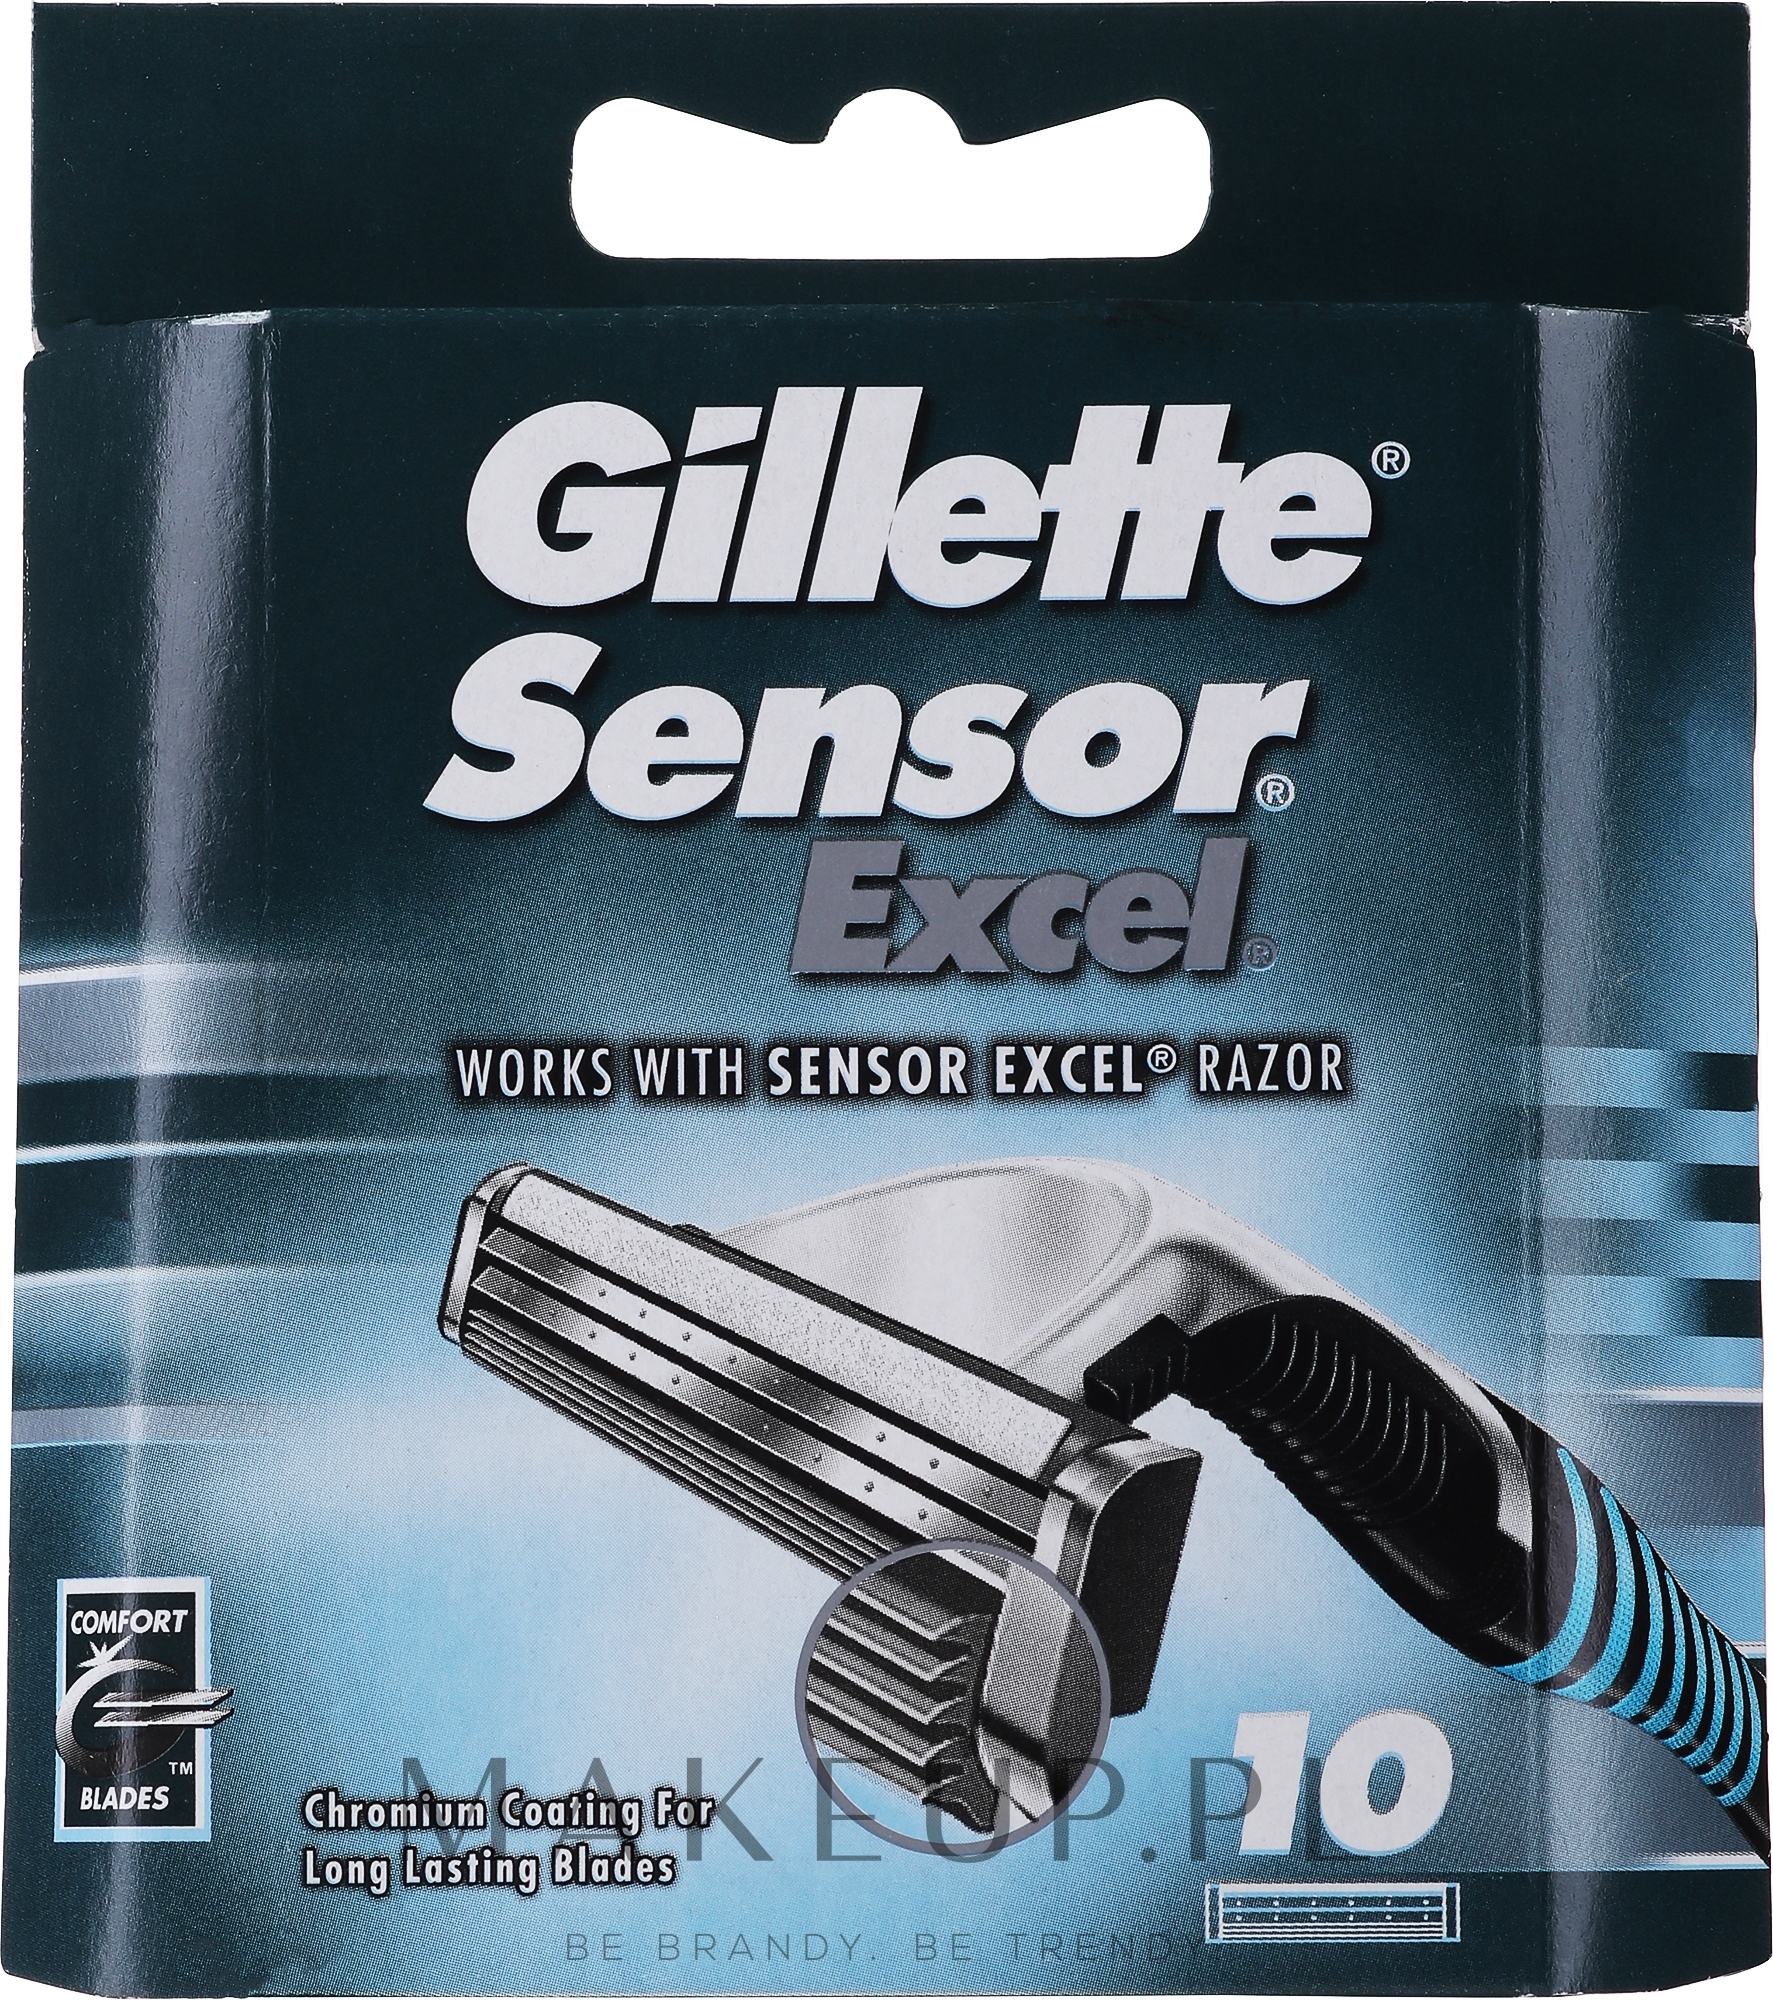 Wymienne wkłady do maszynki, 10 szt. - Gillette Sensor Excel — Zdjęcie 10 szt.